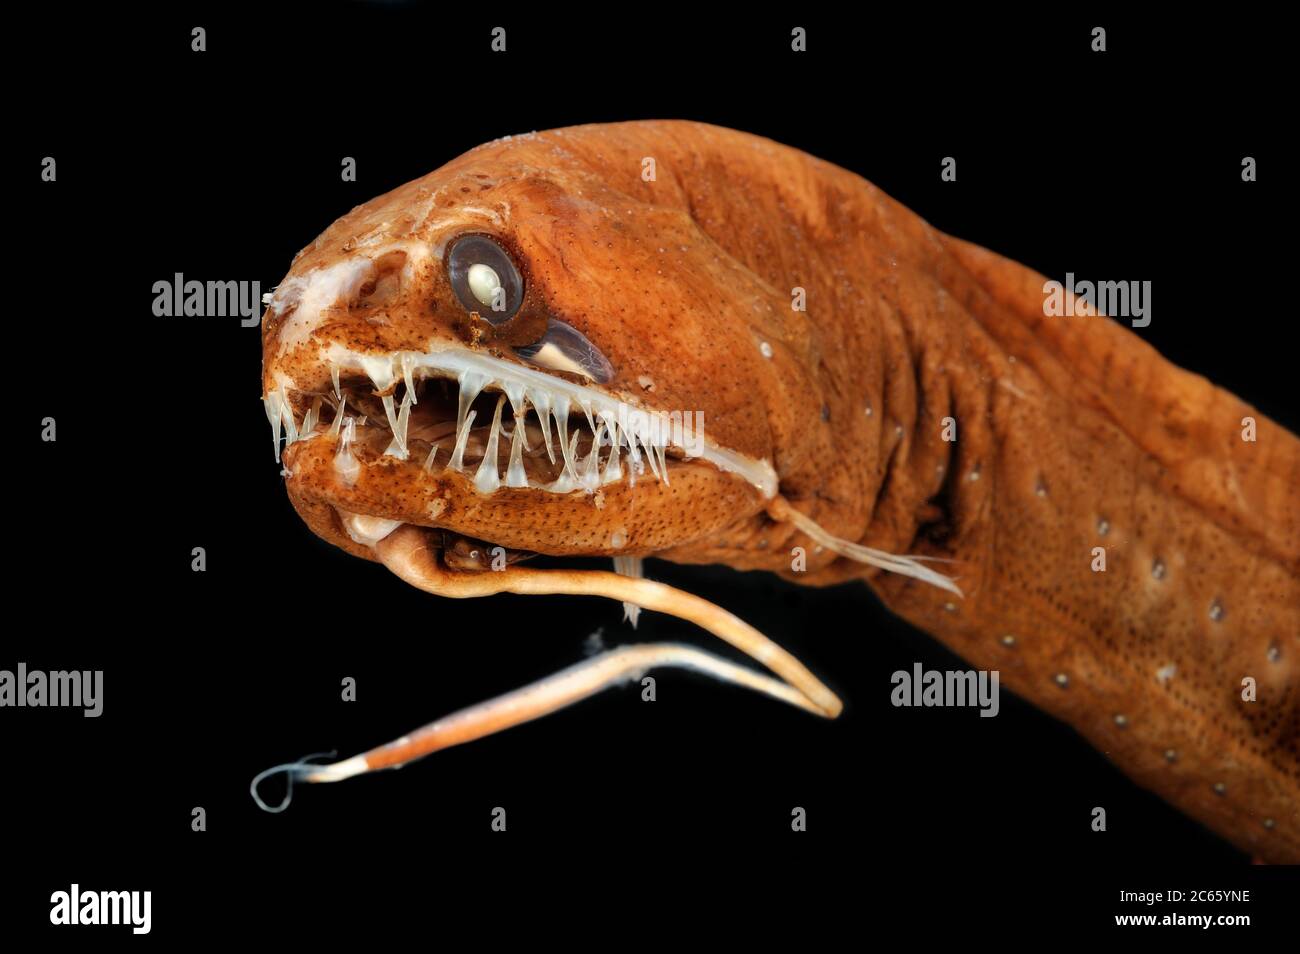 Il pesce drago nero senza scalpo (Melanostomias melanops) è un pesce di mare profondo snello, lungo fino a 30 cm. Presenta un processo di bioluminescenza carnoso al suo mento, utilizzato per attirare preda alla portata della bocca fortemente dentellata. Gli organi emettitori di luce sono disposti lungo la parte inferiore del corpo e sotto l'occhio. Si trova nell'Oceano Atlantico e Indo-Pacifico. Campione conservato. La foto è stata scattata in collaborazione con l'Università del Museo Zoologico di Amburgo. Foto Stock